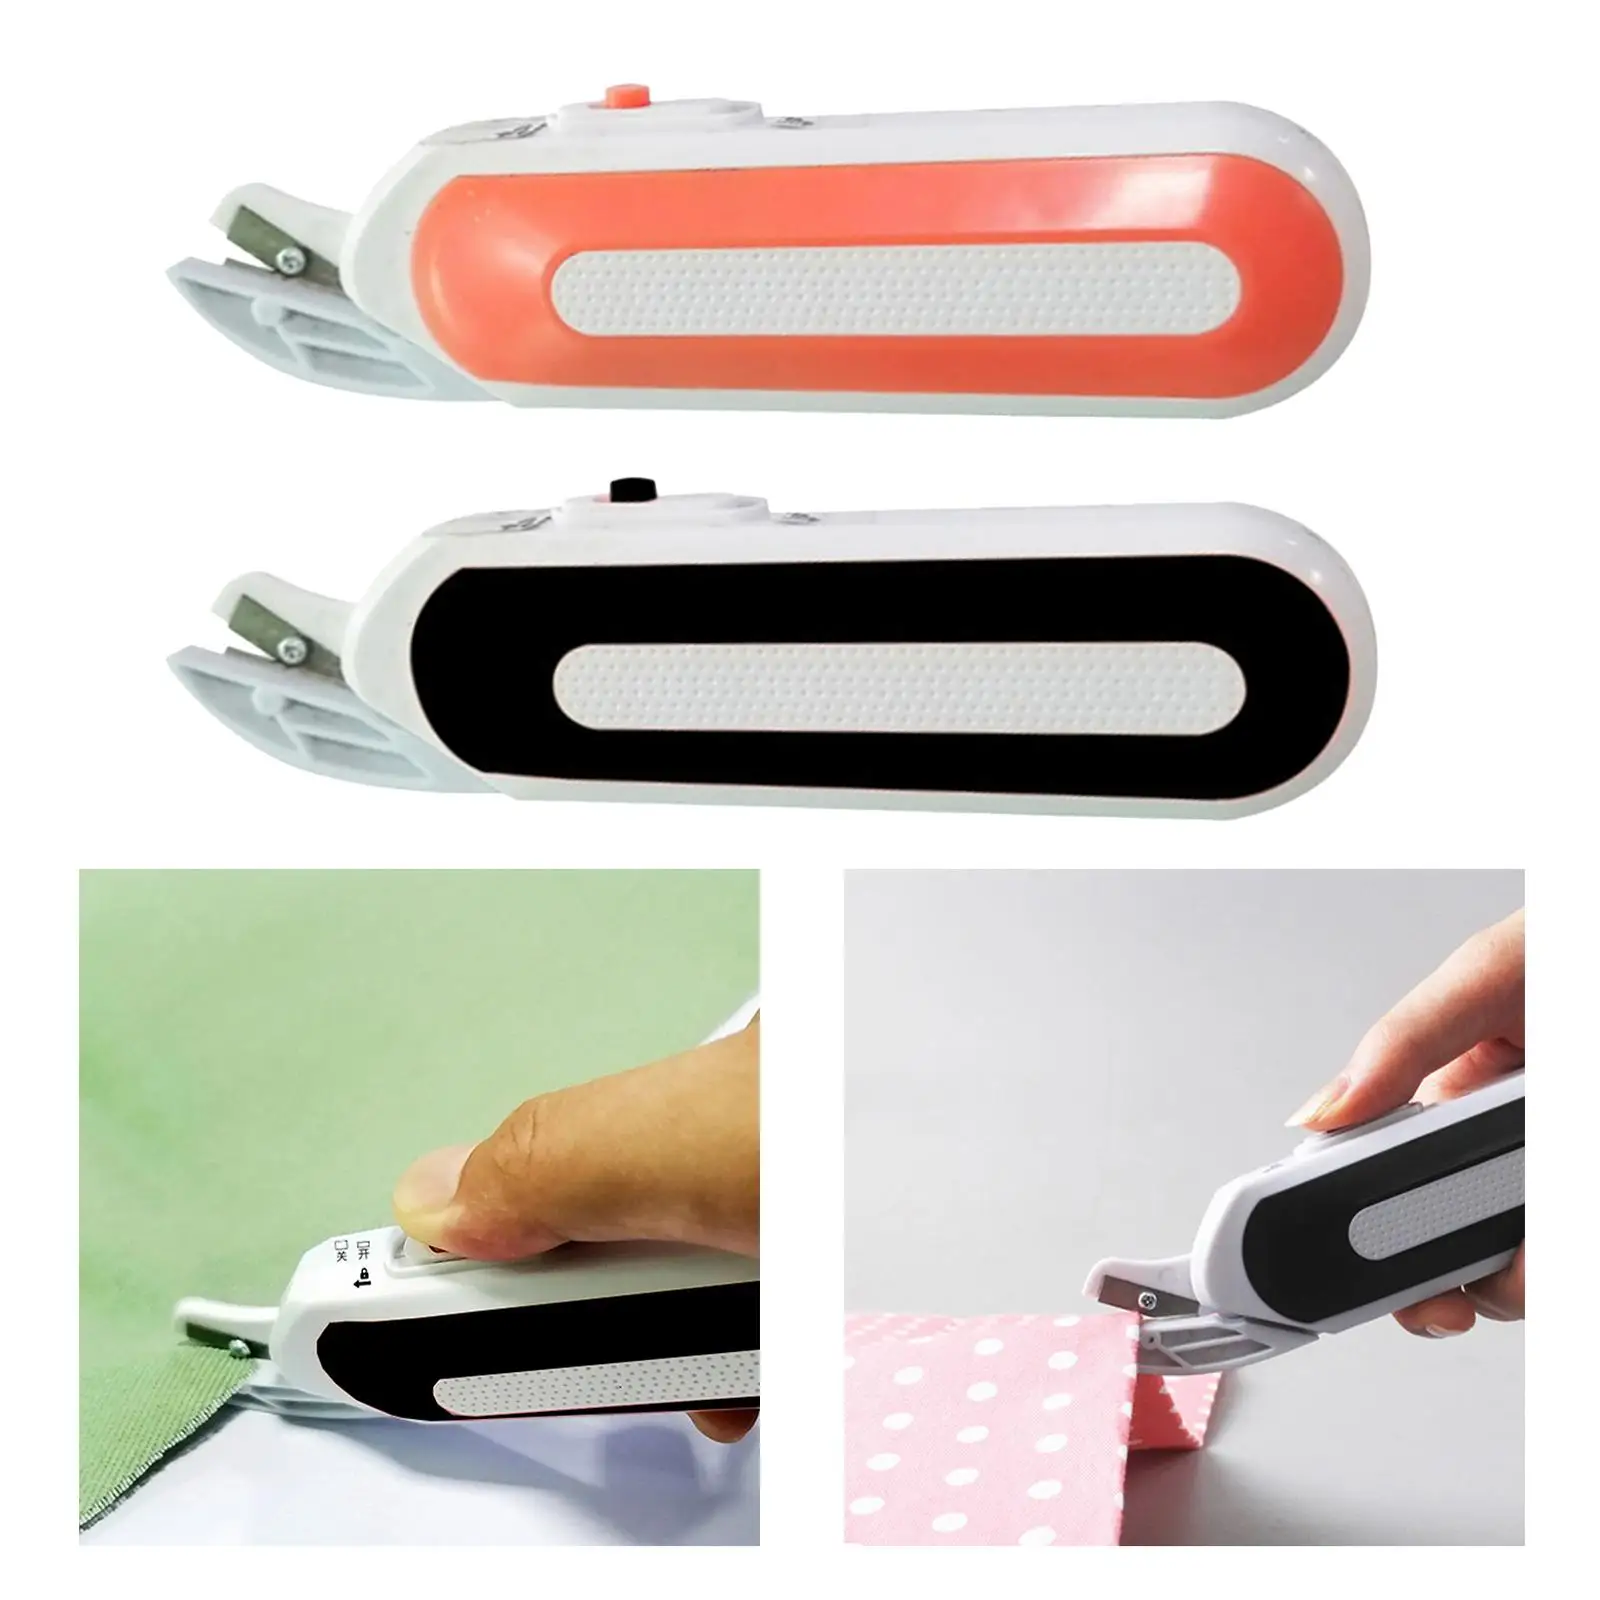 Mini Portable Electrics for Cardboard Cutting Tool